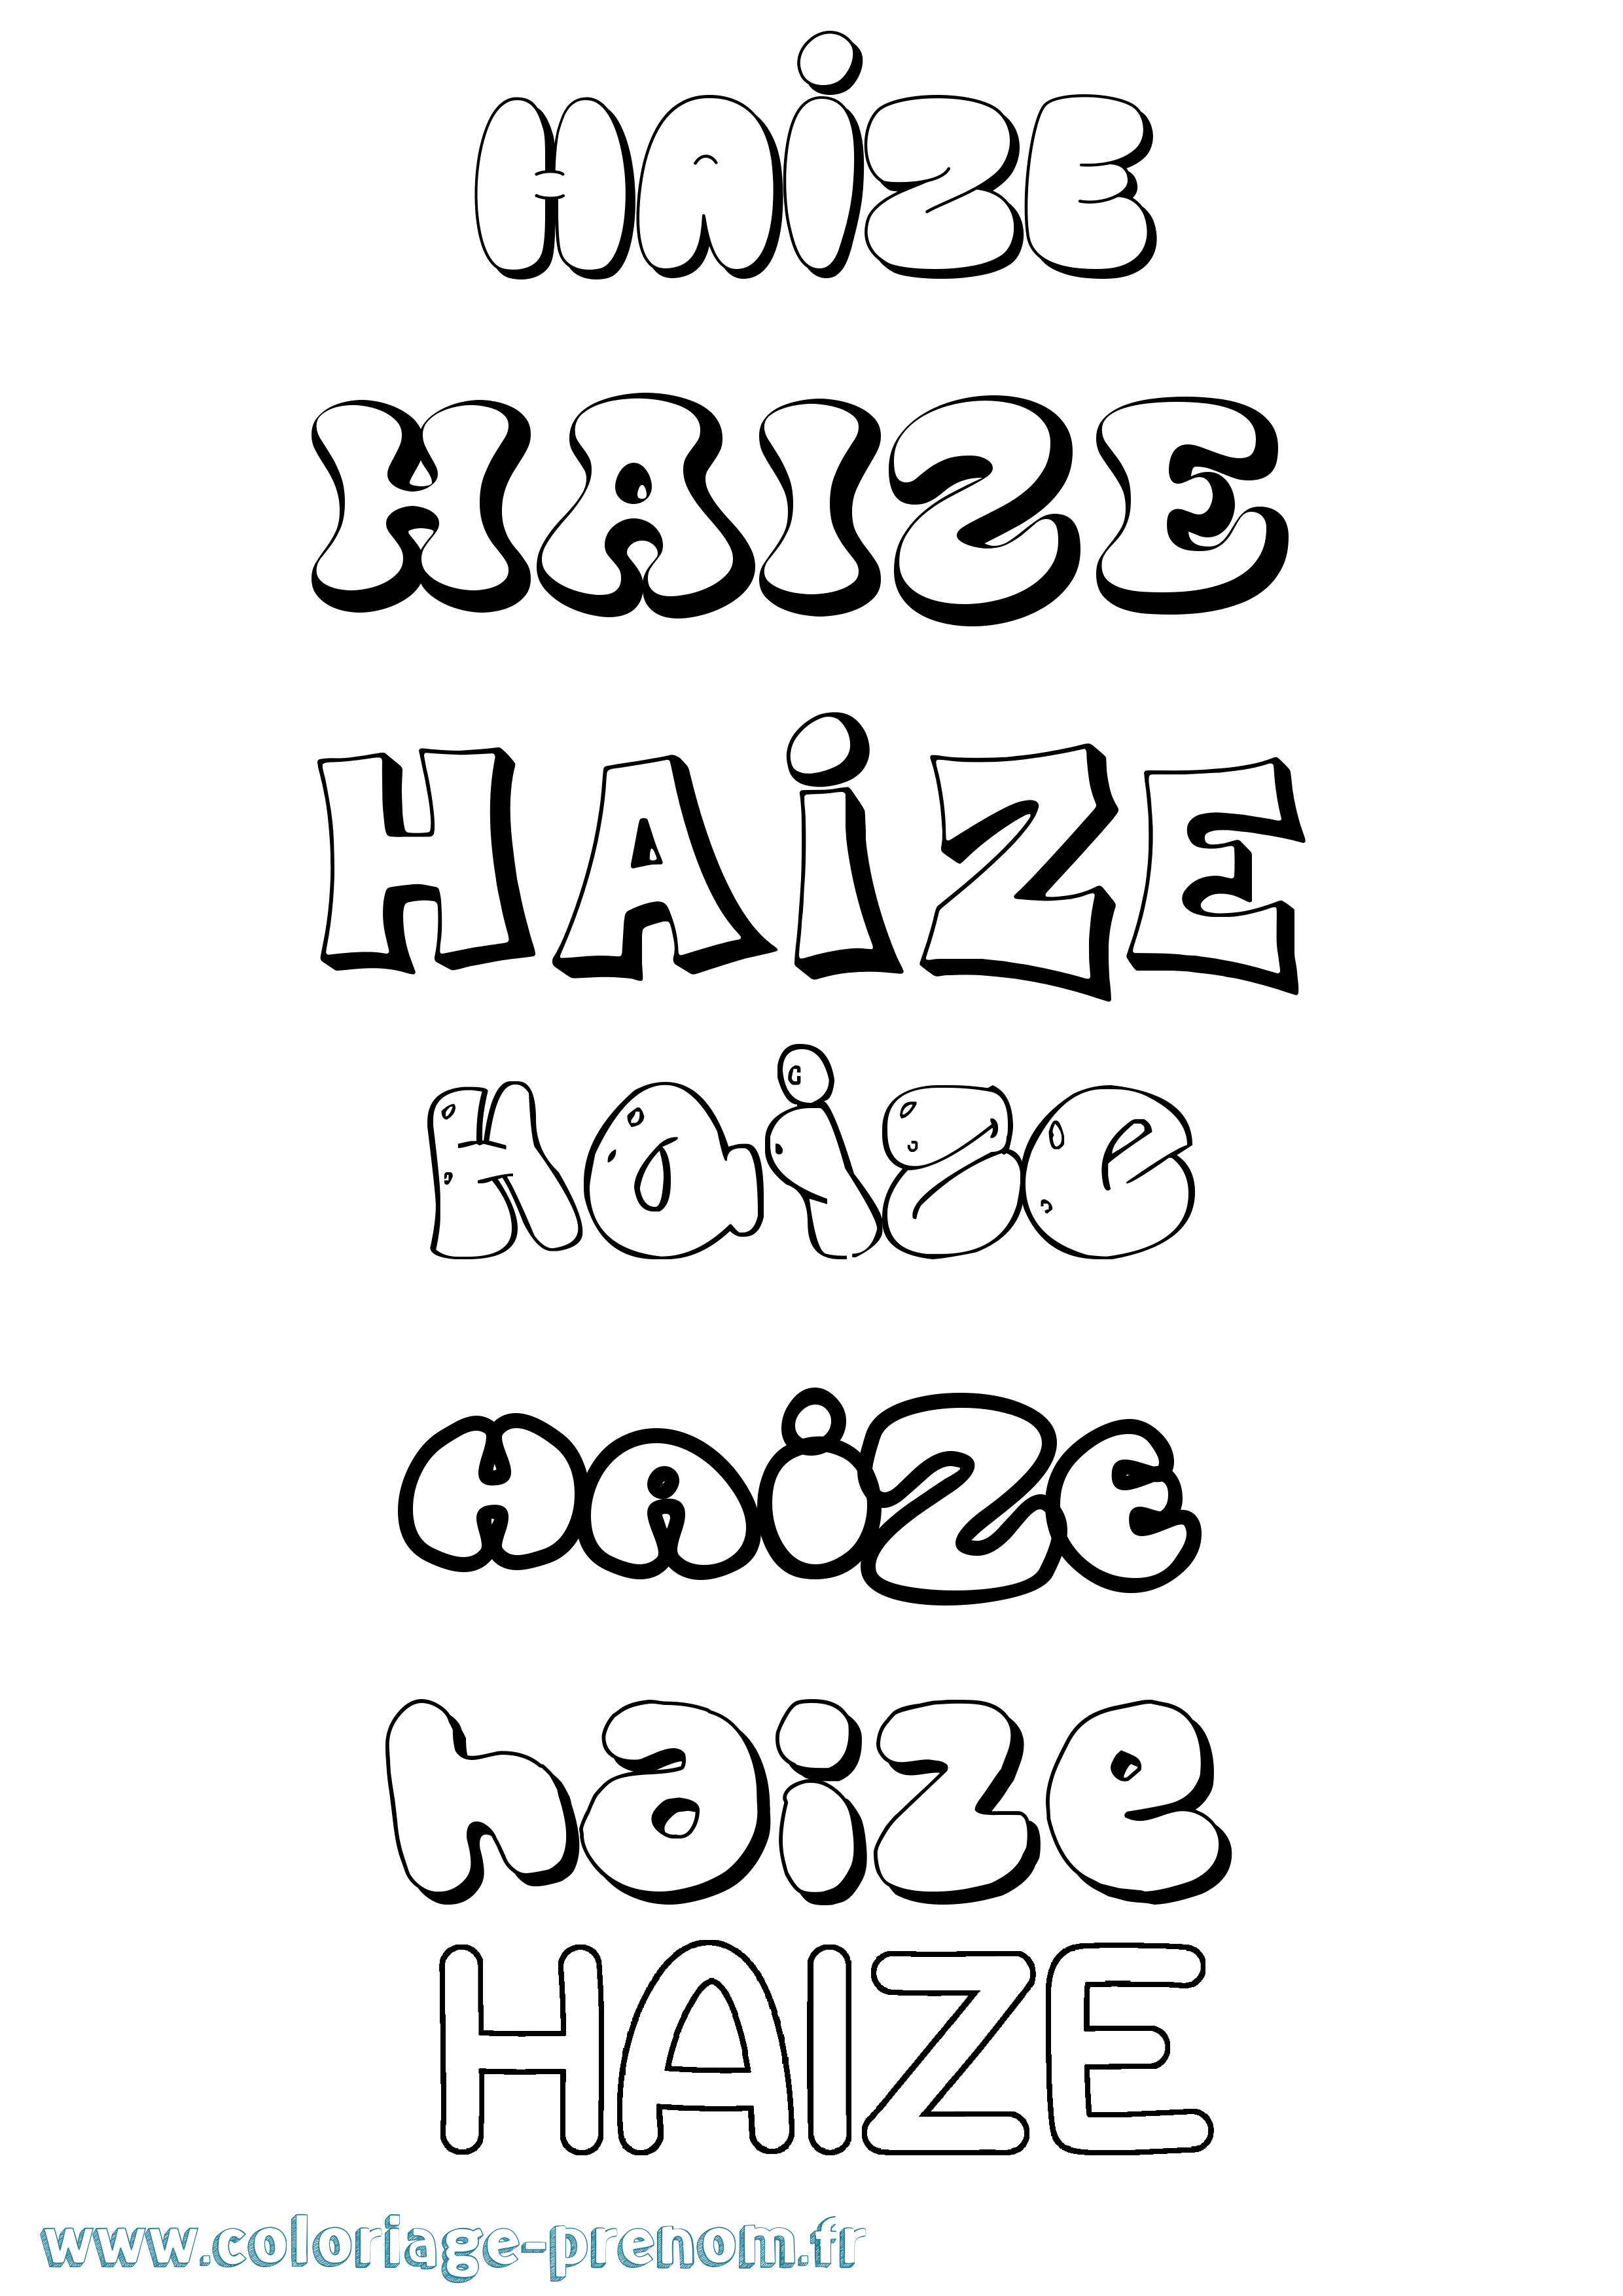 Coloriage prénom Haize Bubble